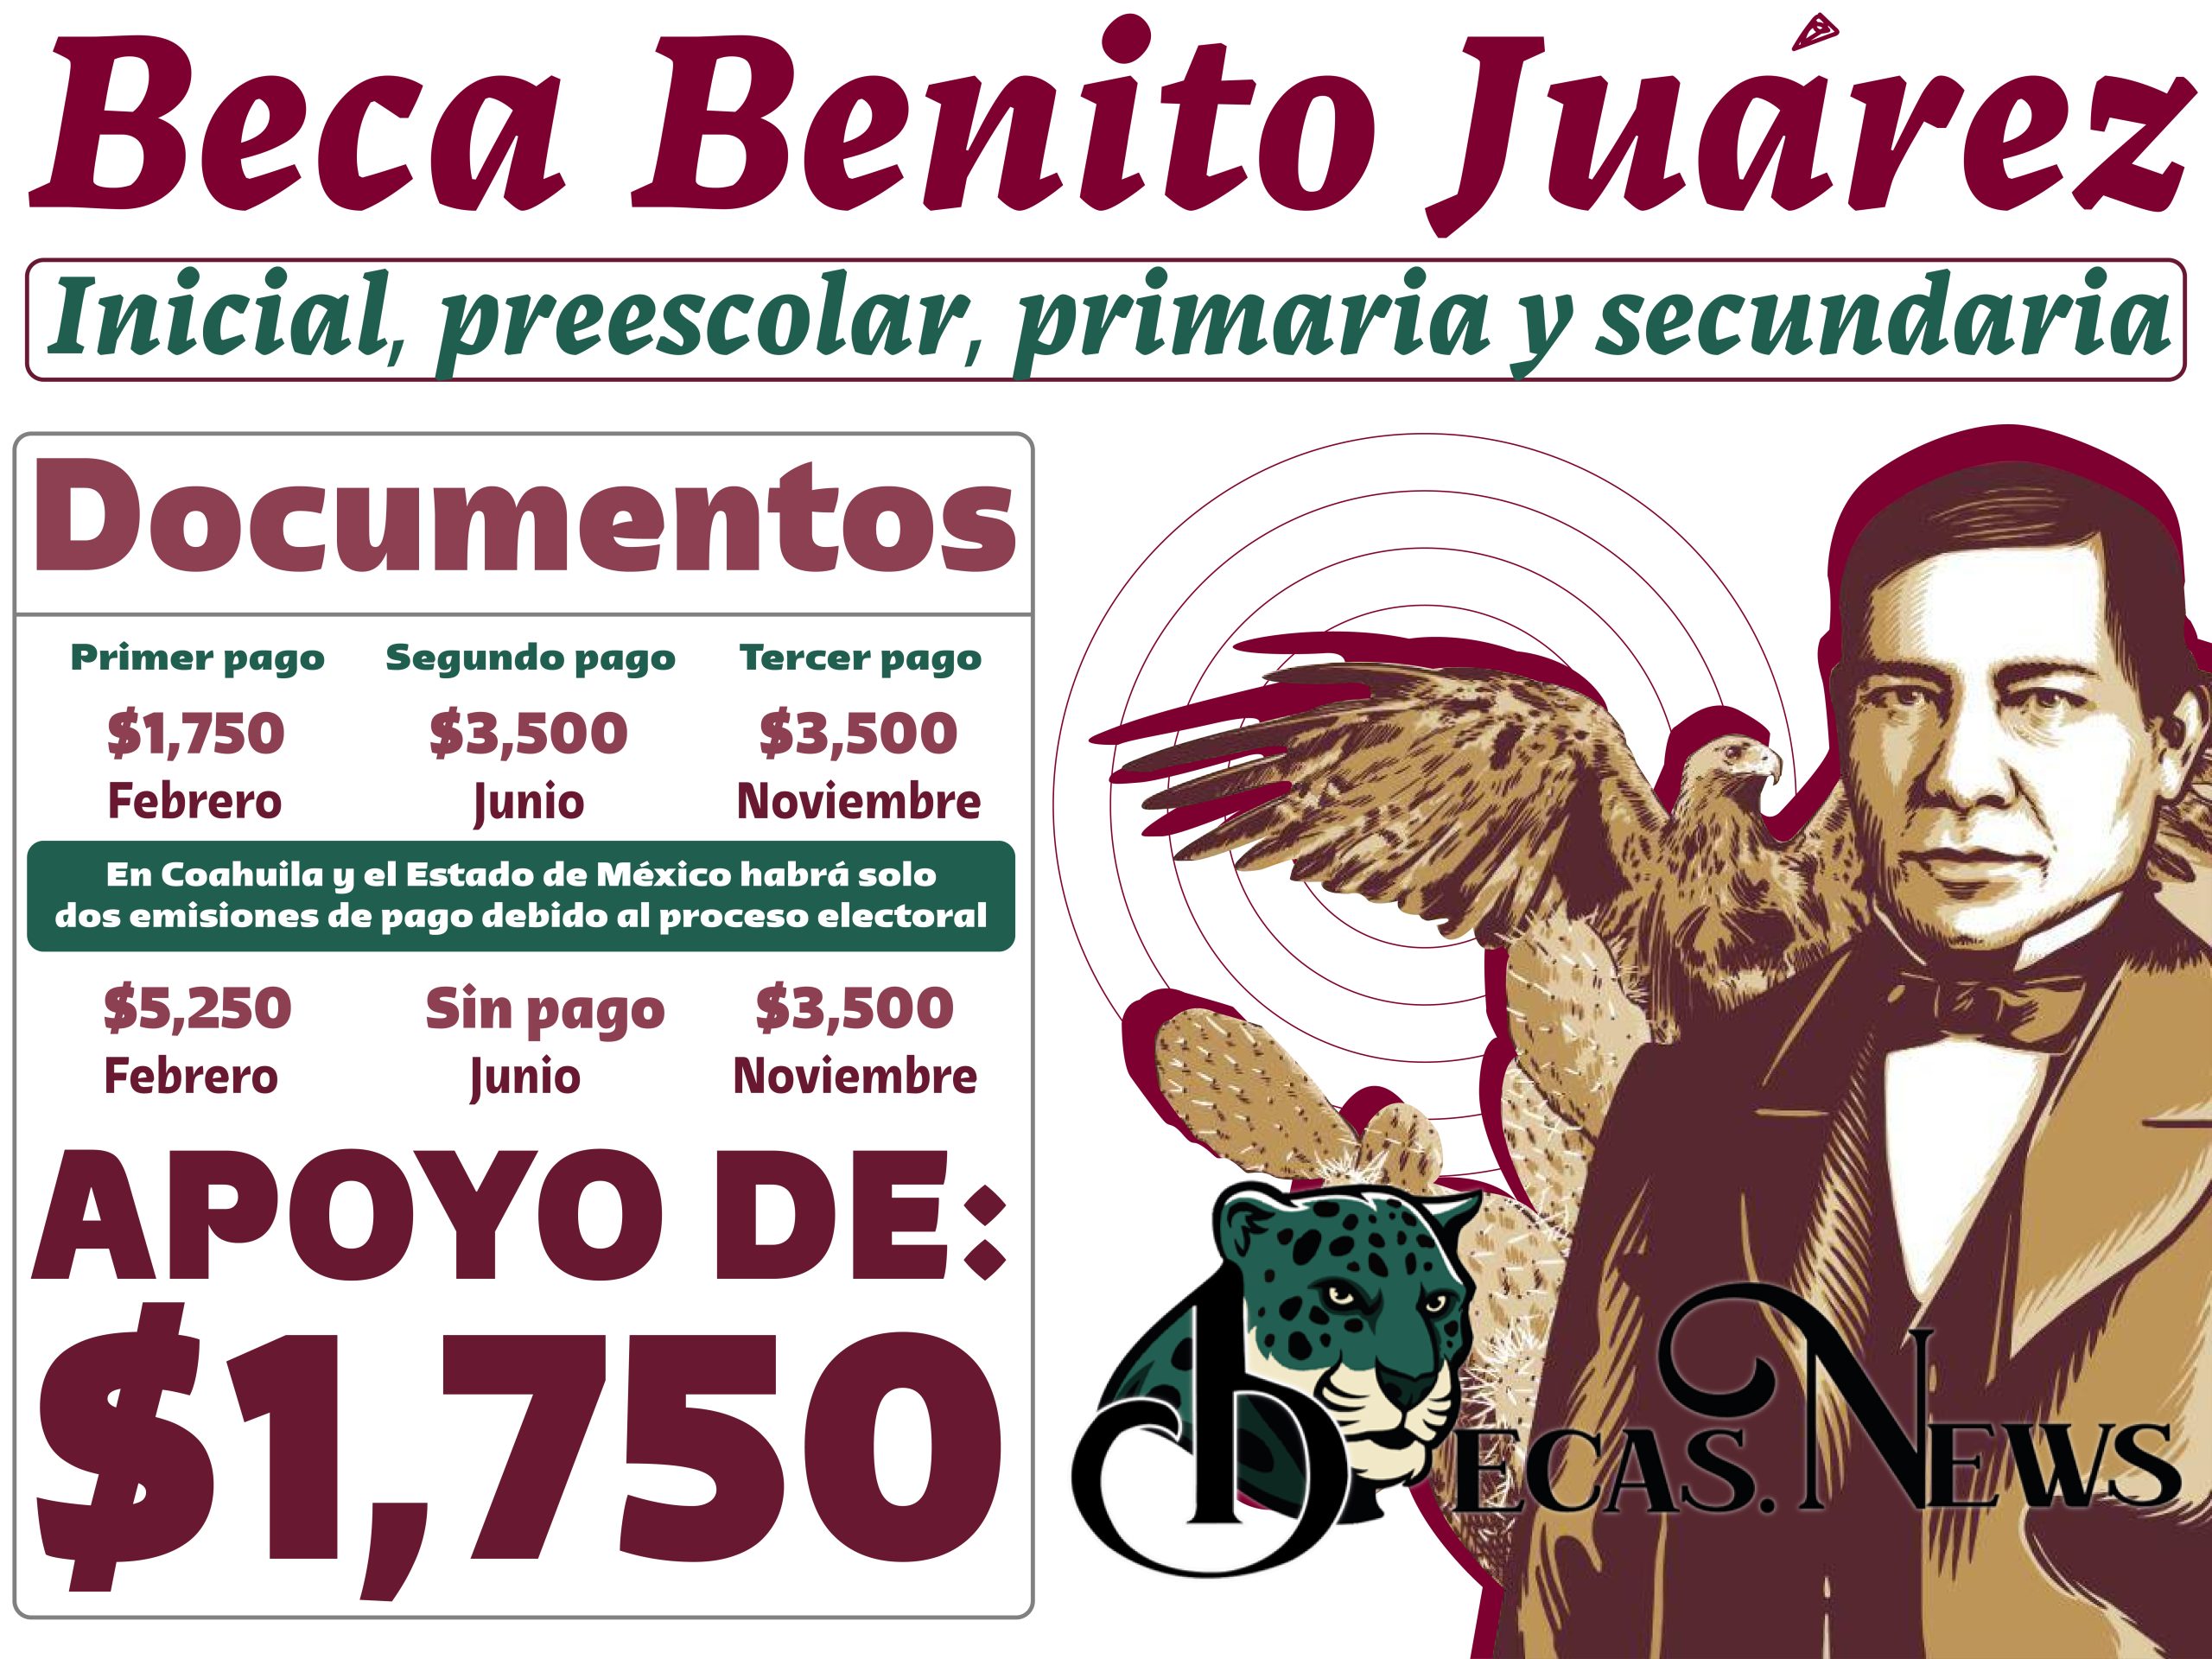 ¡ALUMNO! Estos son los Documentos Necesarios para la Inscripción a la Beca Benito Juárez